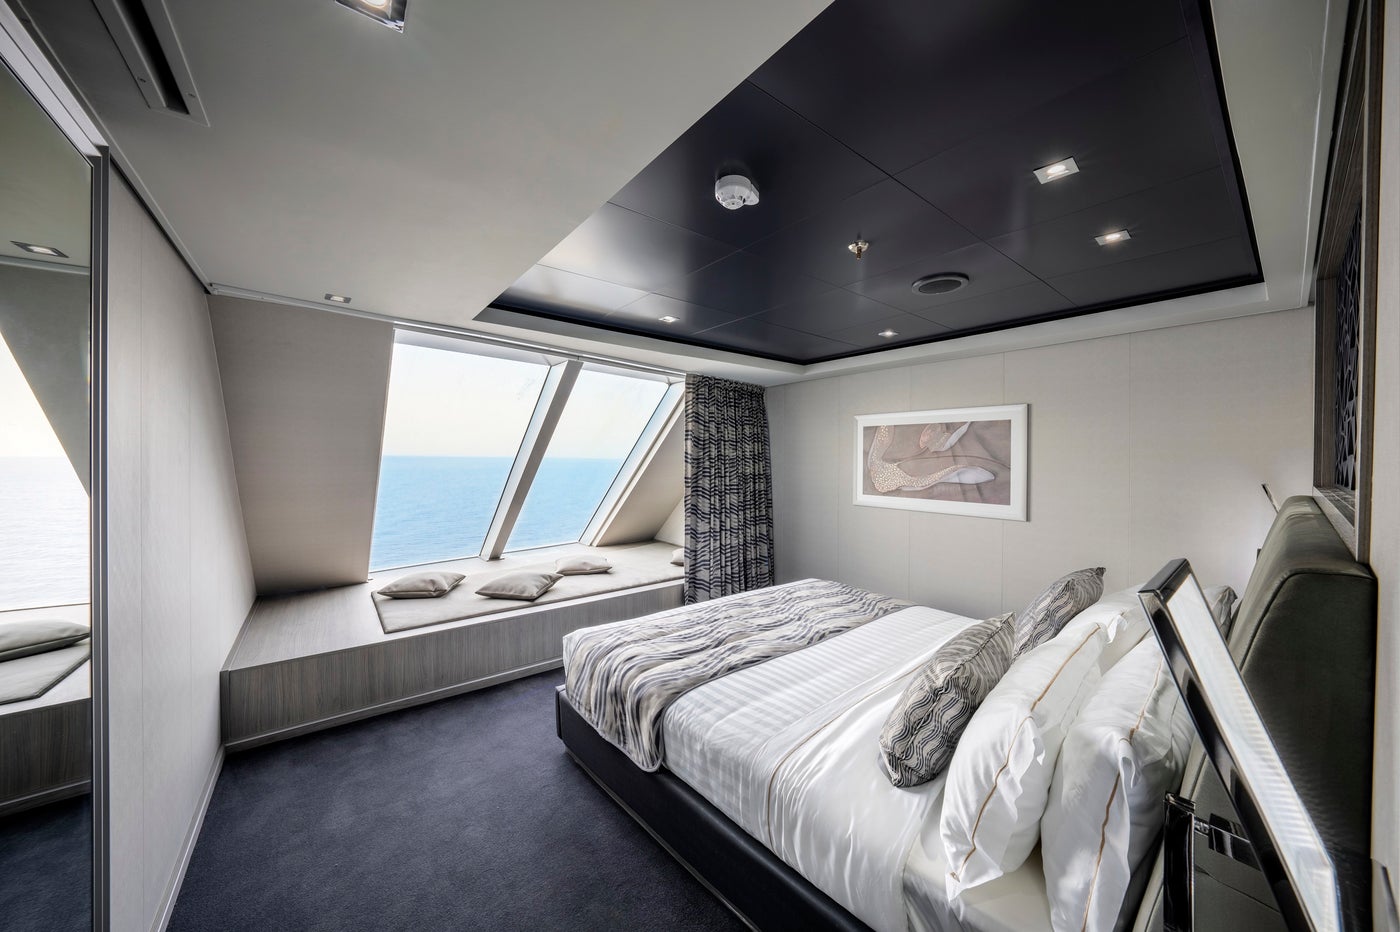 msc yacht club owner's suite seashore